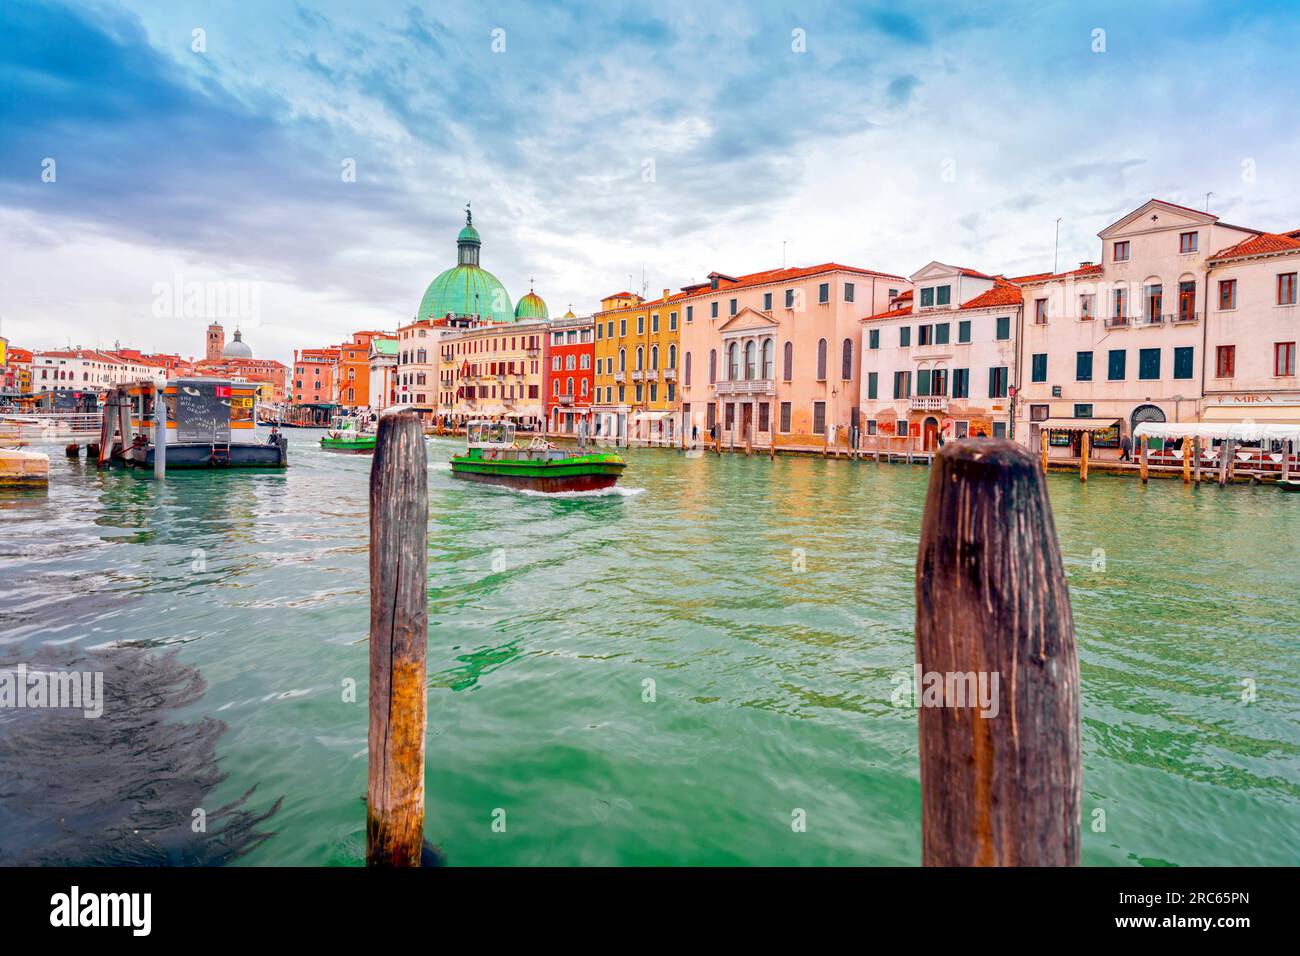 Venezia, Italia - 2 aprile 2022: Splendidi canali e tradizionali edifici veneziani a Venezia, Veneto, Italia nord-orientale. Foto Stock